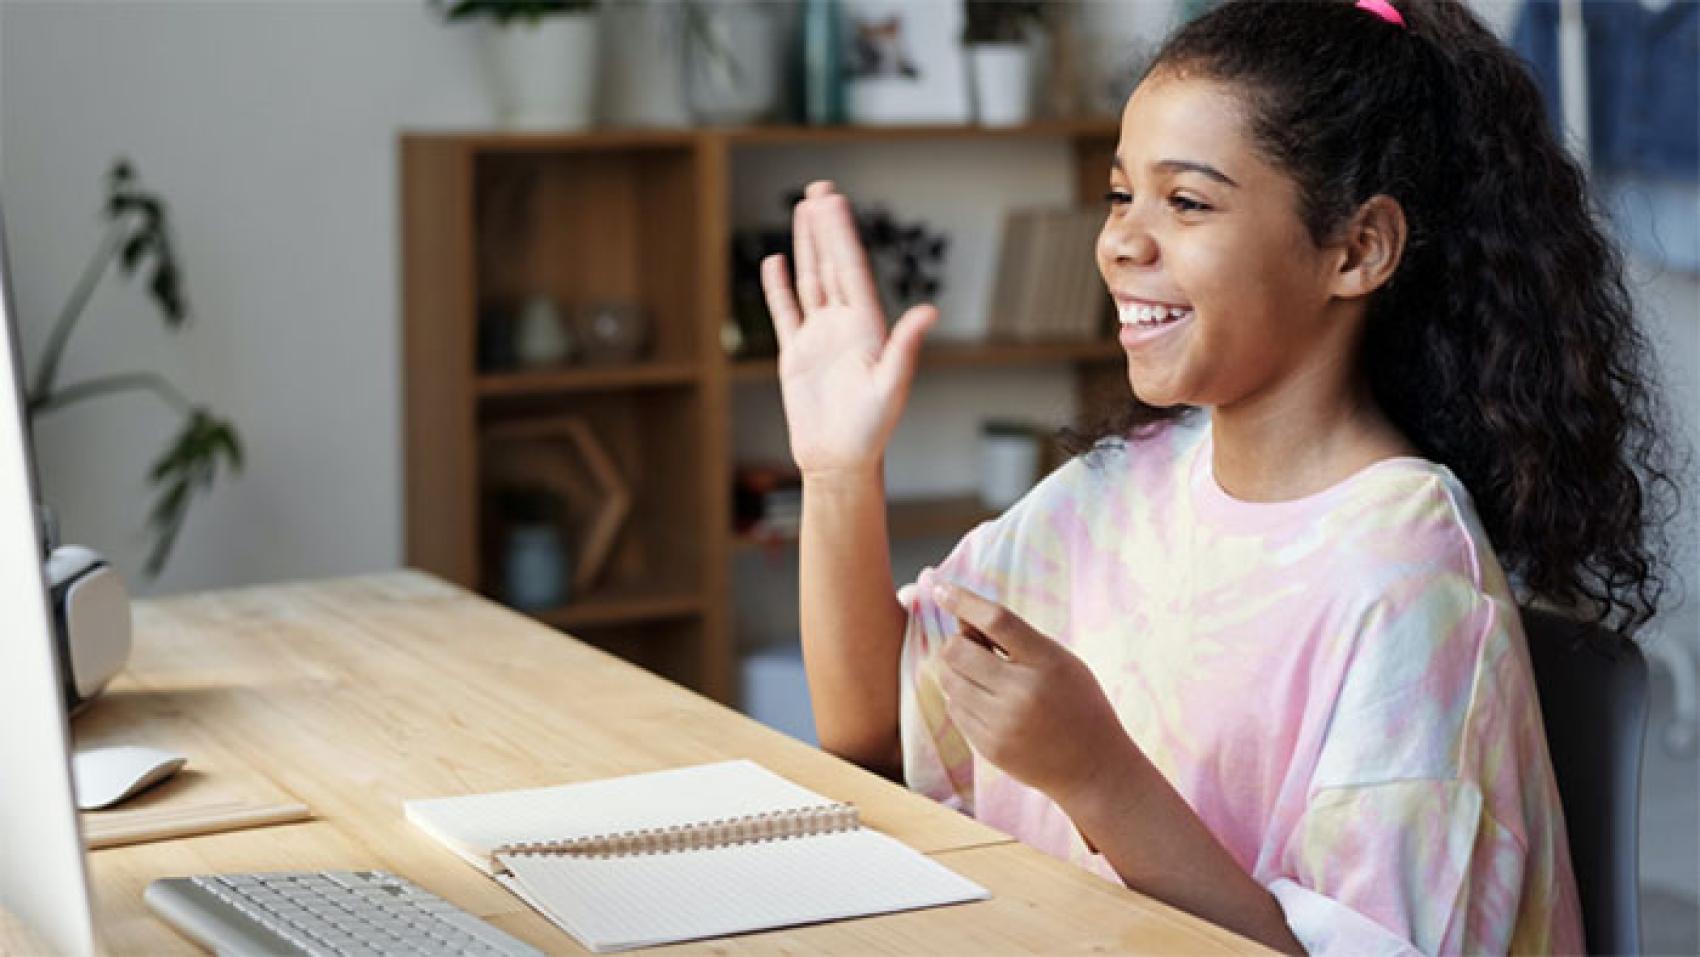 Young girl waving to monitor screen